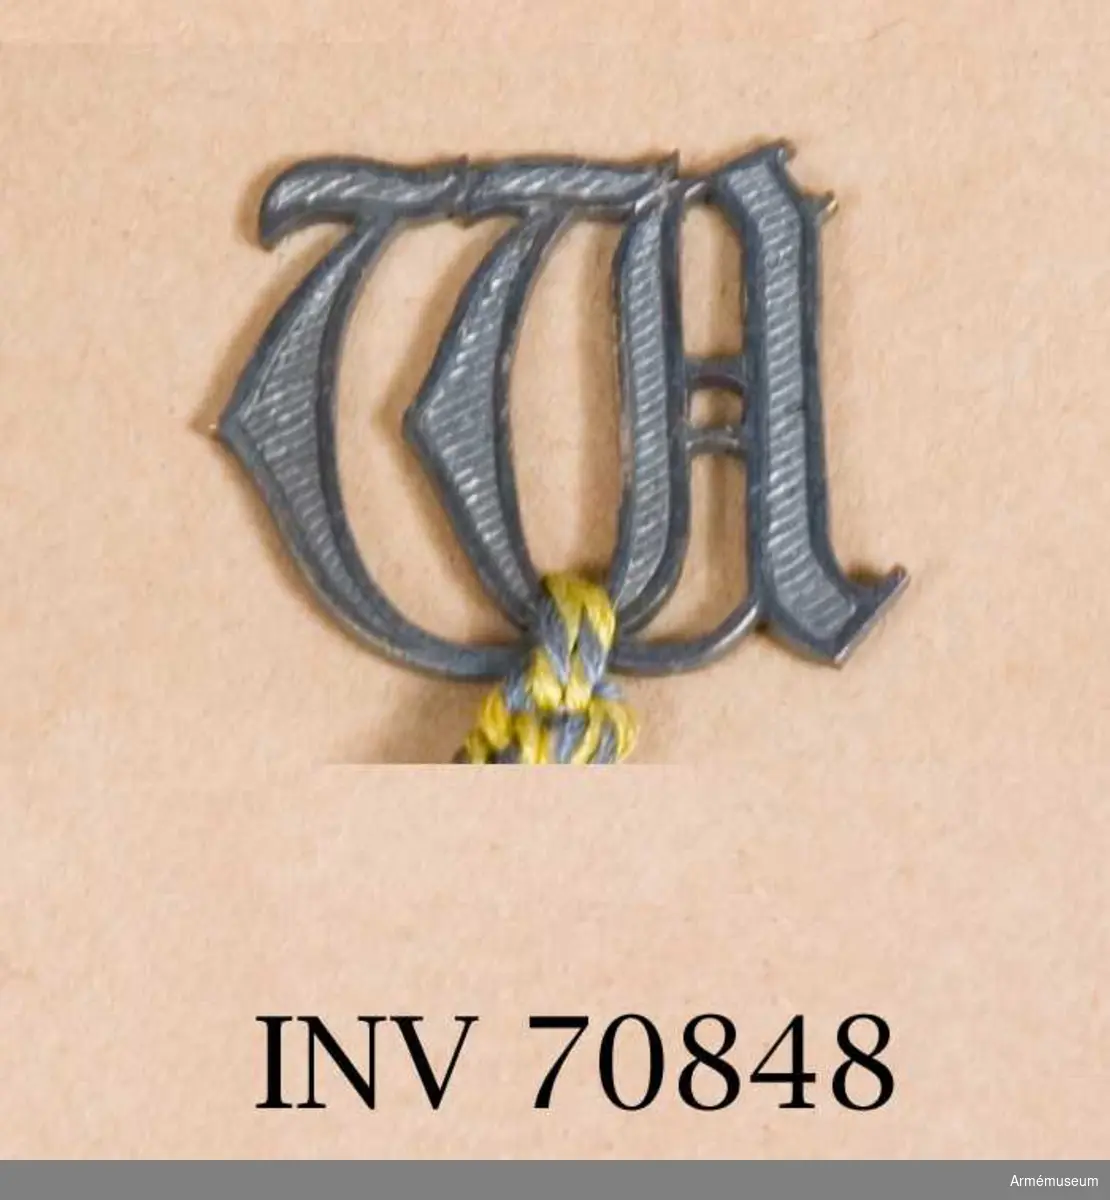 Grupp C.I. 
Modell å bokstaven W m/1914 för Kungl. Väg- och vattenbyggnadskåren, fastställd genom go nr 1422 den 11. september 1914. 